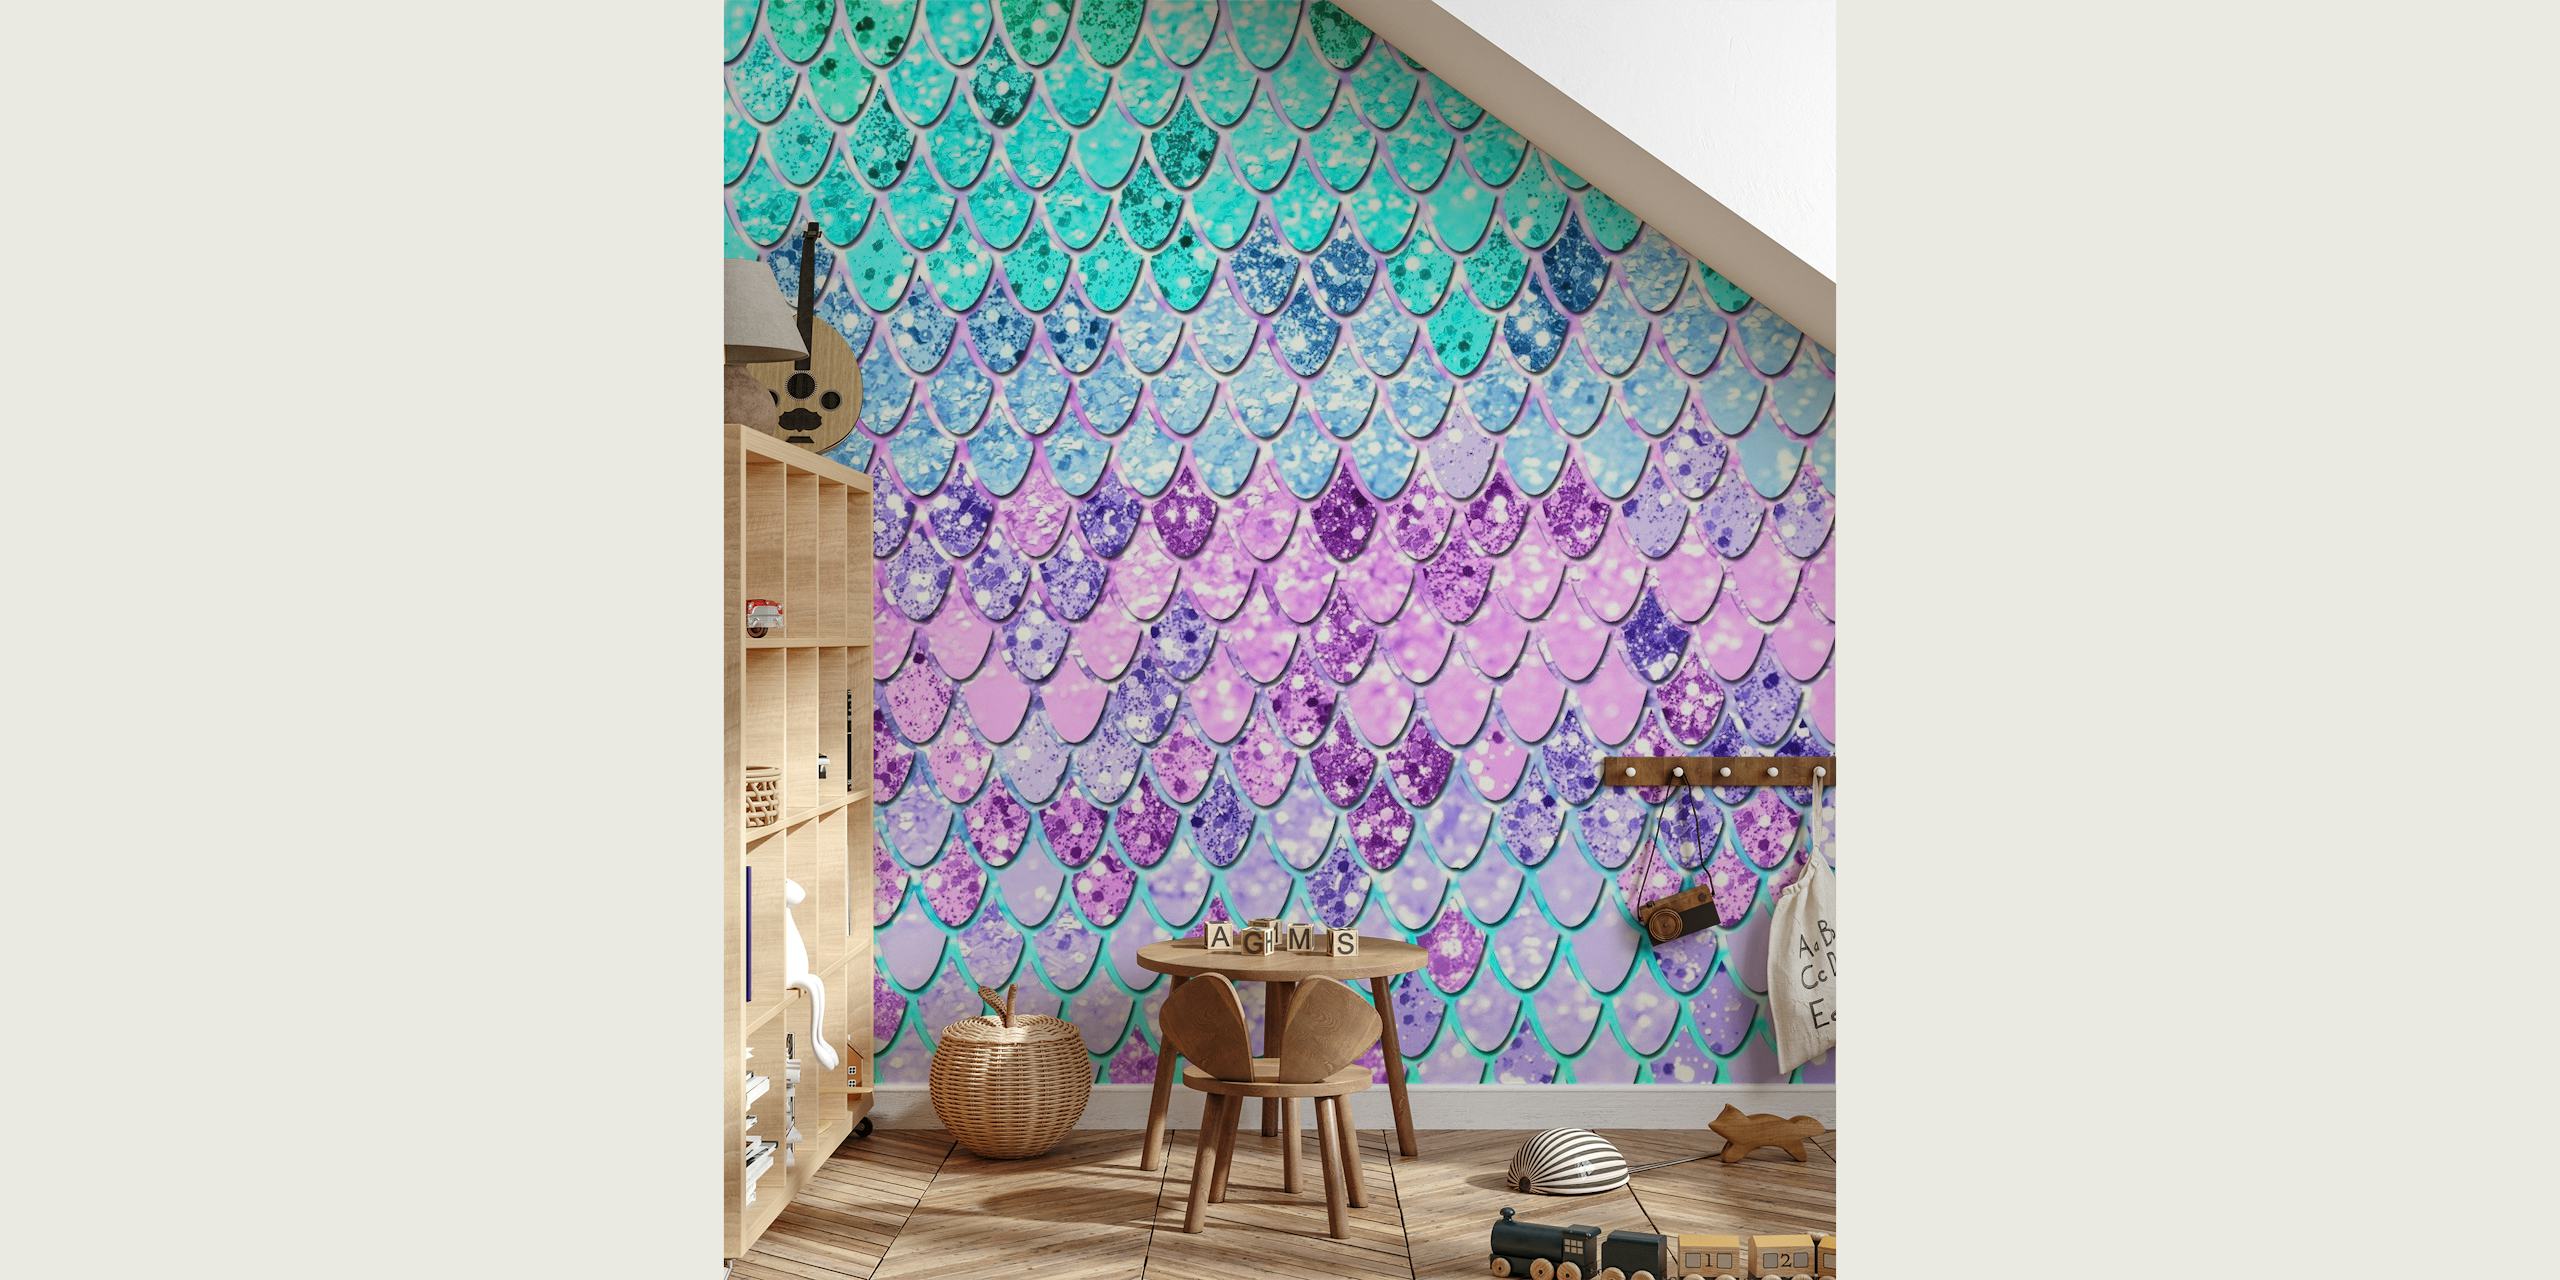 Zidna slika s uzorkom ljuski sirene u boji s vodenoplavom i ljubičastom bojom i svjetlucavim efektom